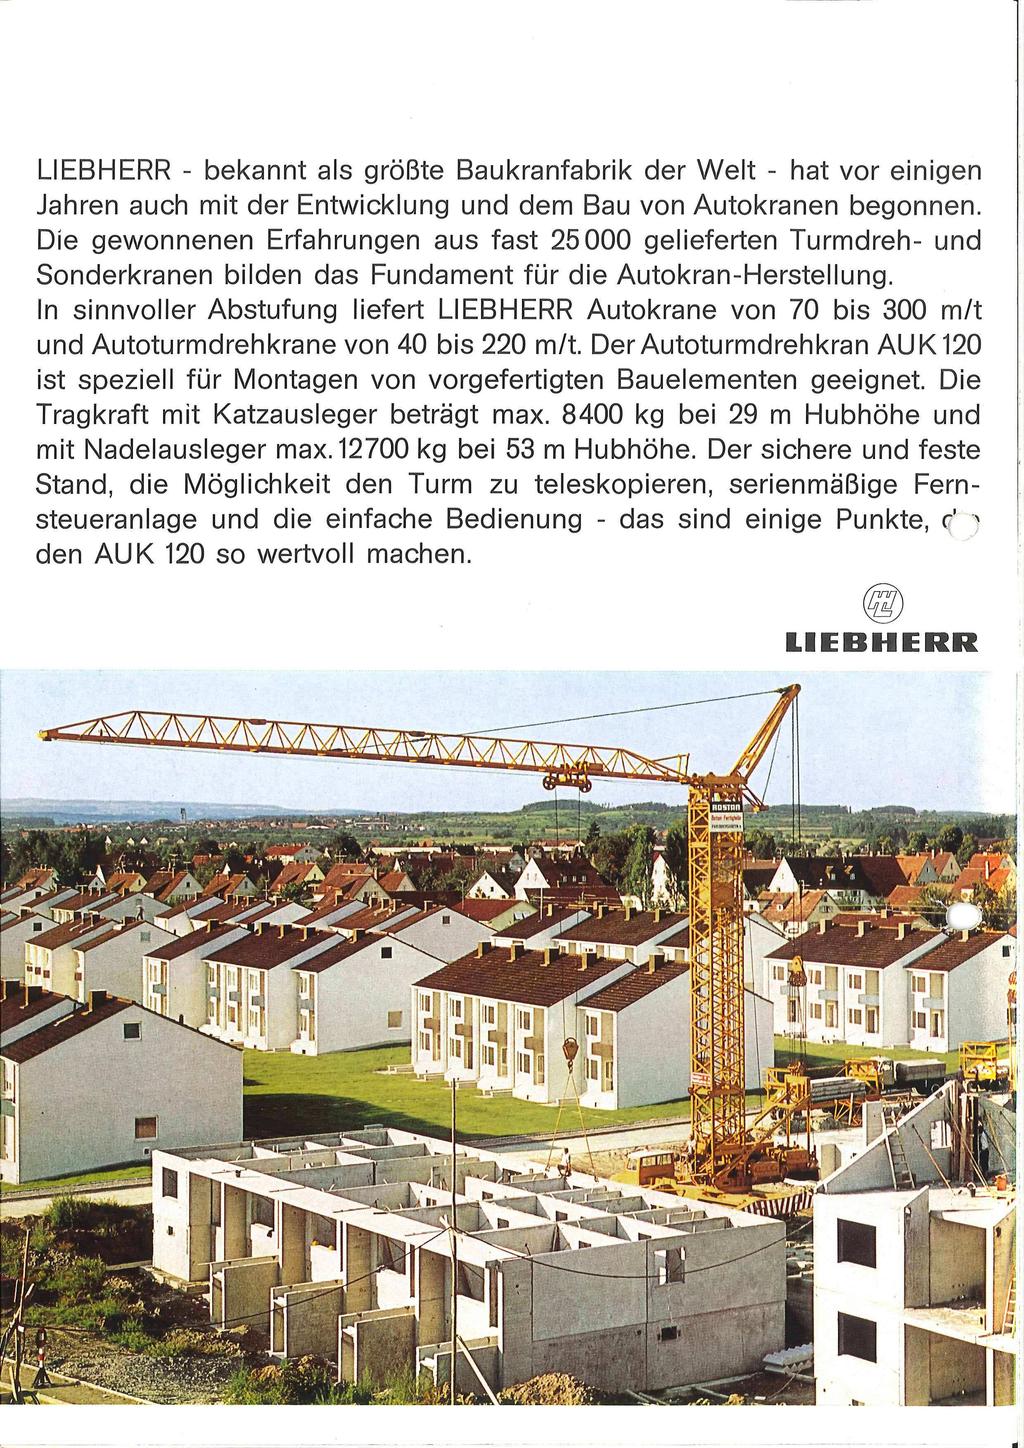 LIEBHERR - bekannt als grobte Baukranfabrik der Welt - hat vor einigen Jahren auch mit der Entwicklung und dem Bau von Autokranen begonnen.